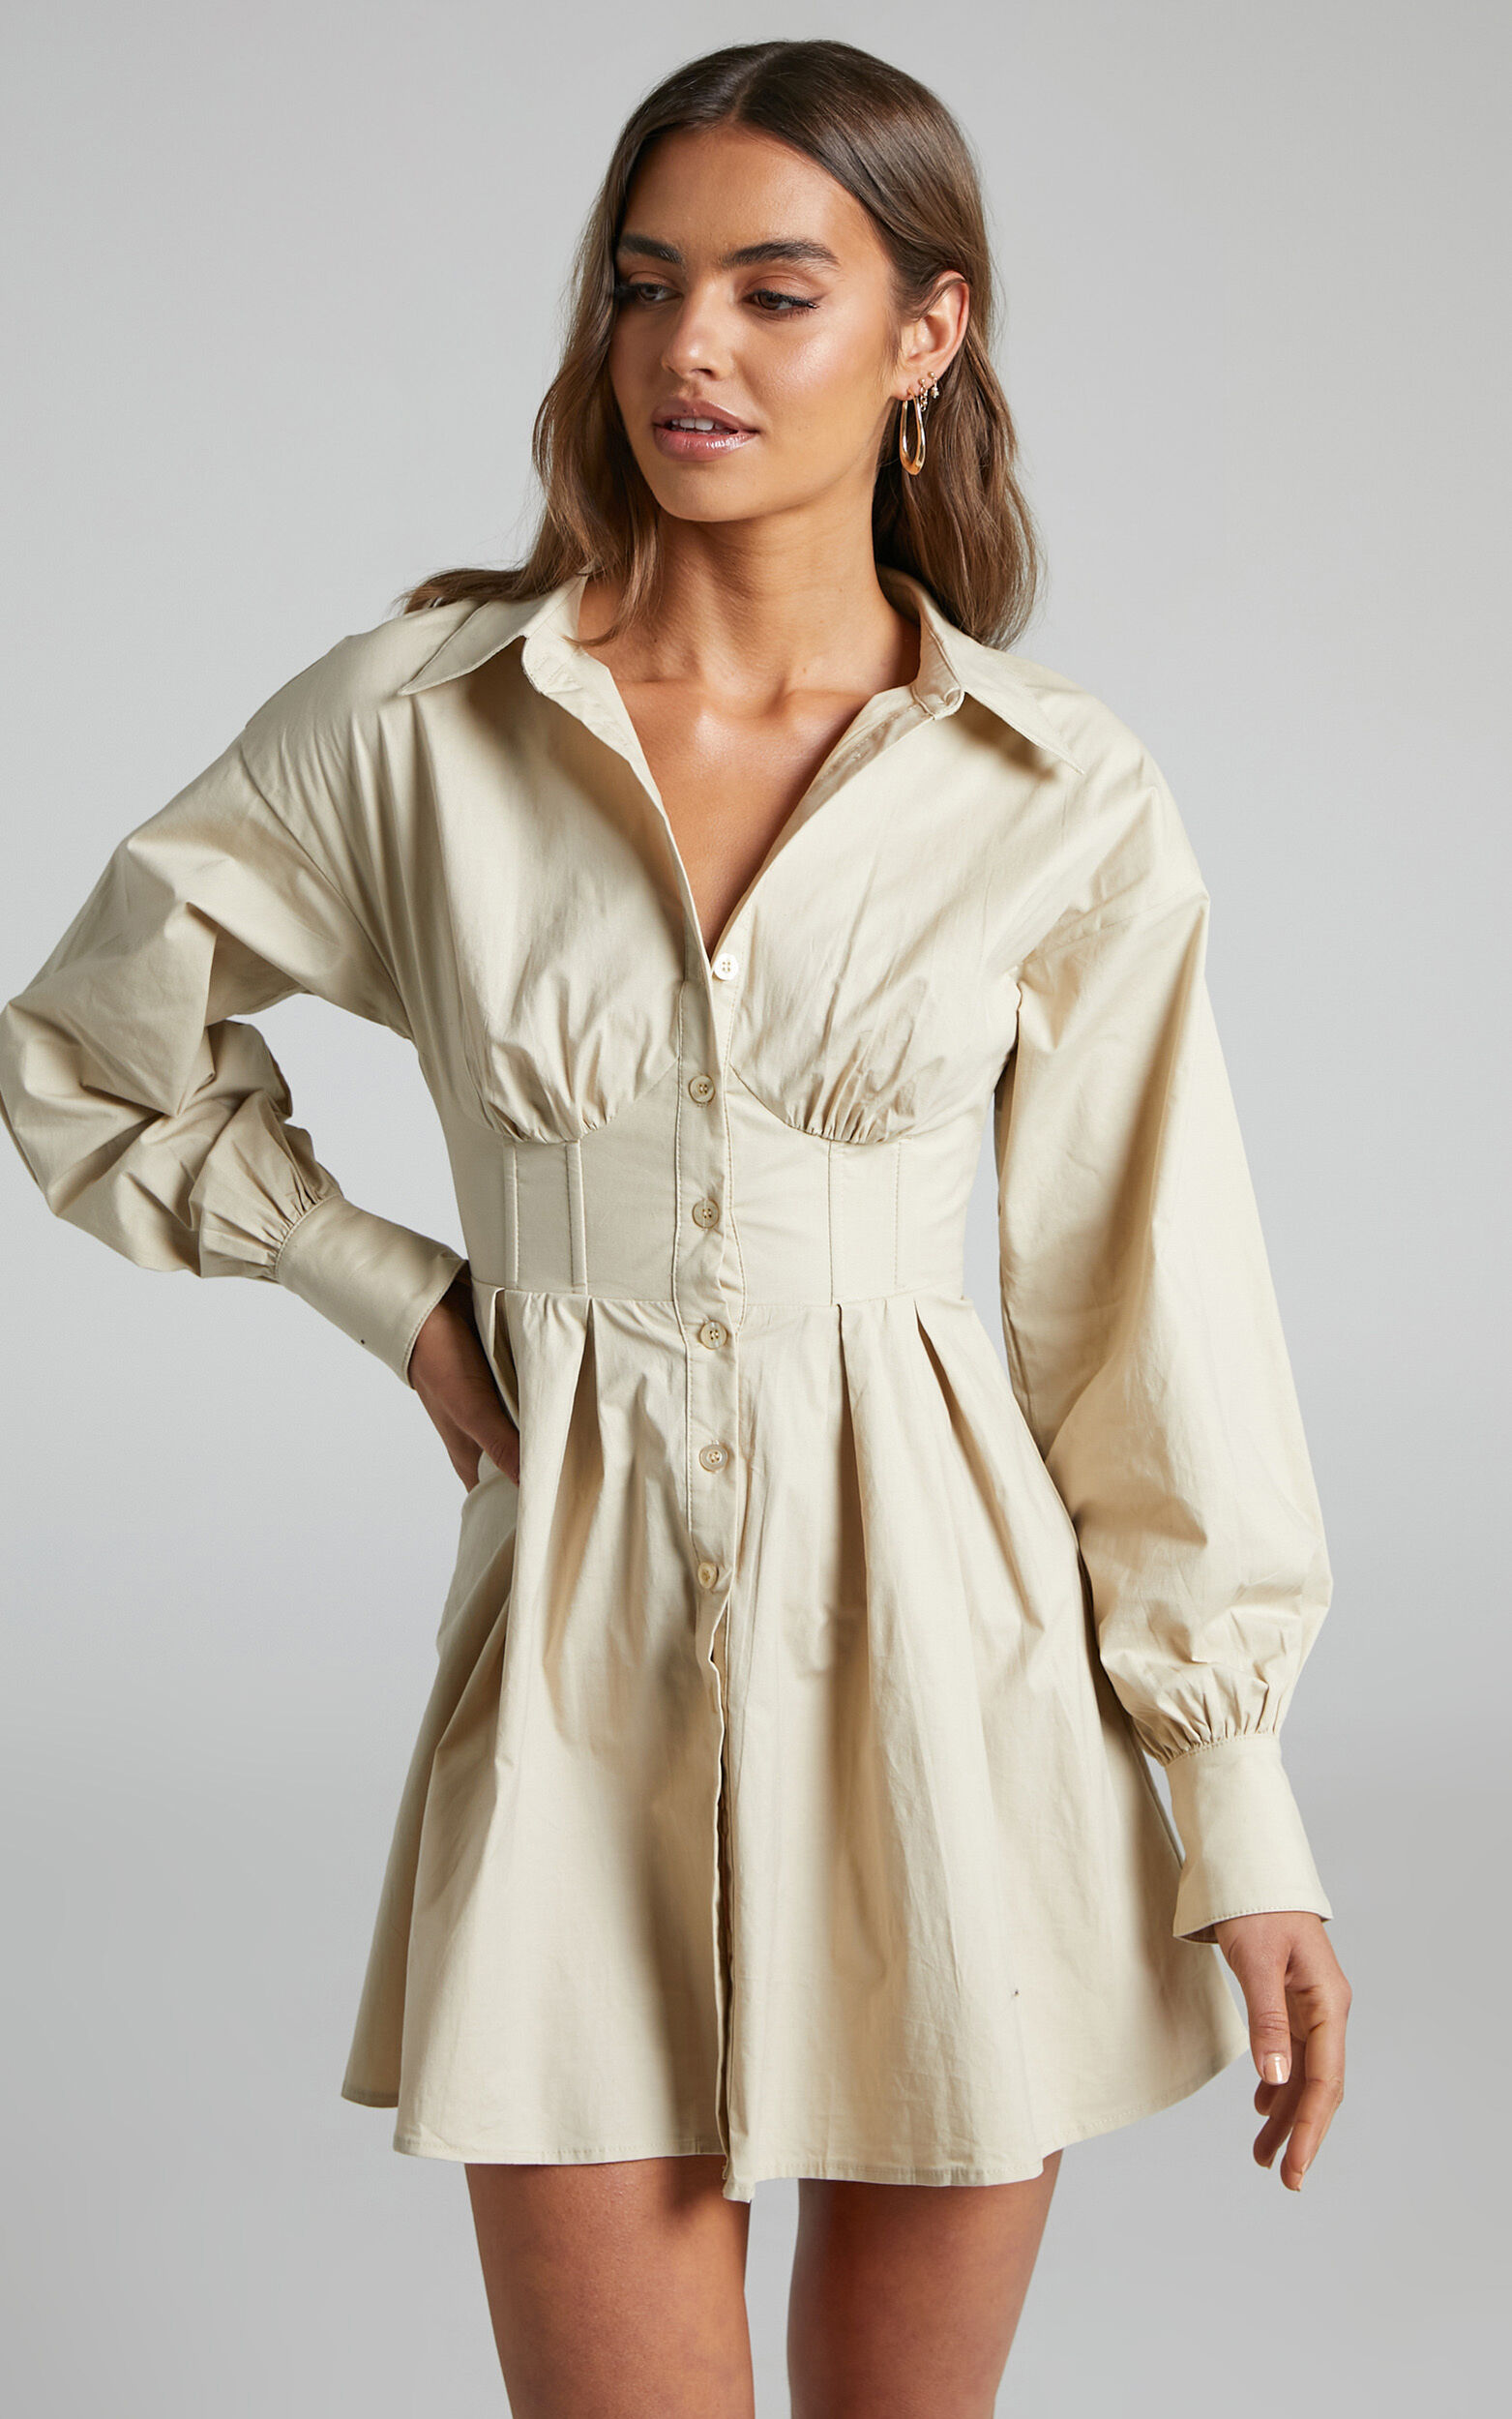 Claudette Mini Dress - Long Sleeve Corset Shirt Dress in Sand - 06, NEU1